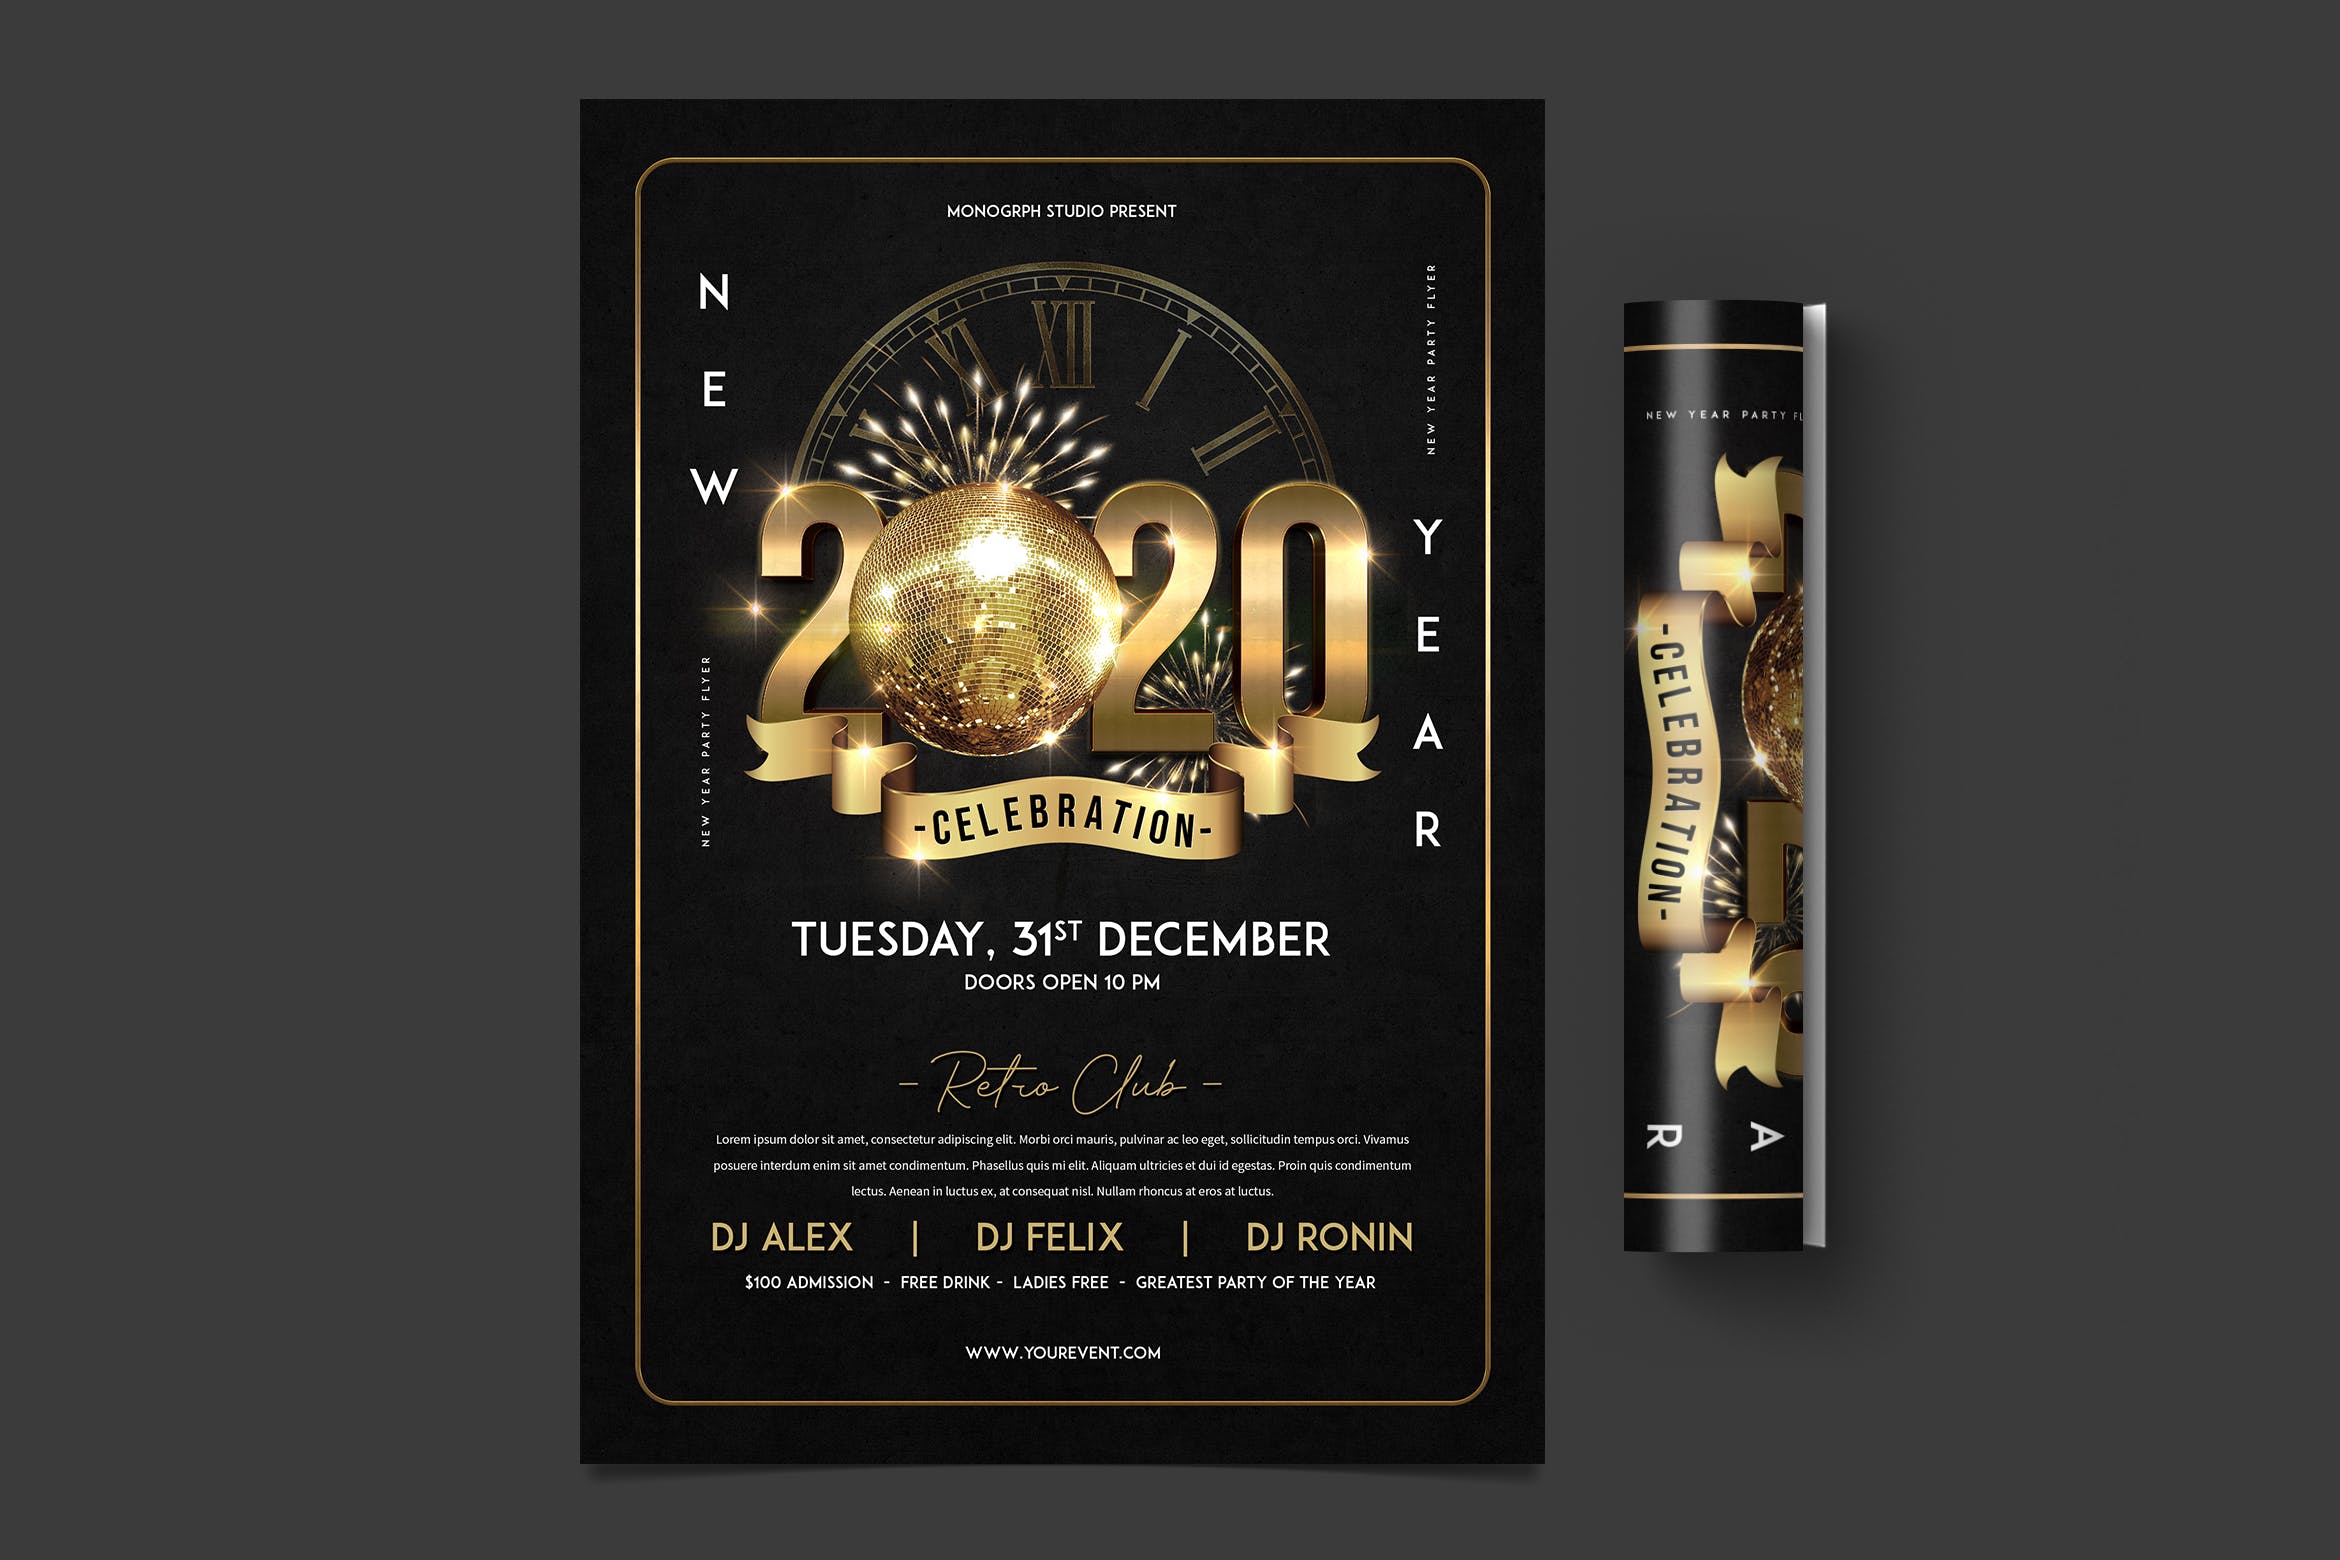 酒吧夜场2020年倒计时特别活动海报传单第一素材精选PSD模板 New Year Party Flyer插图